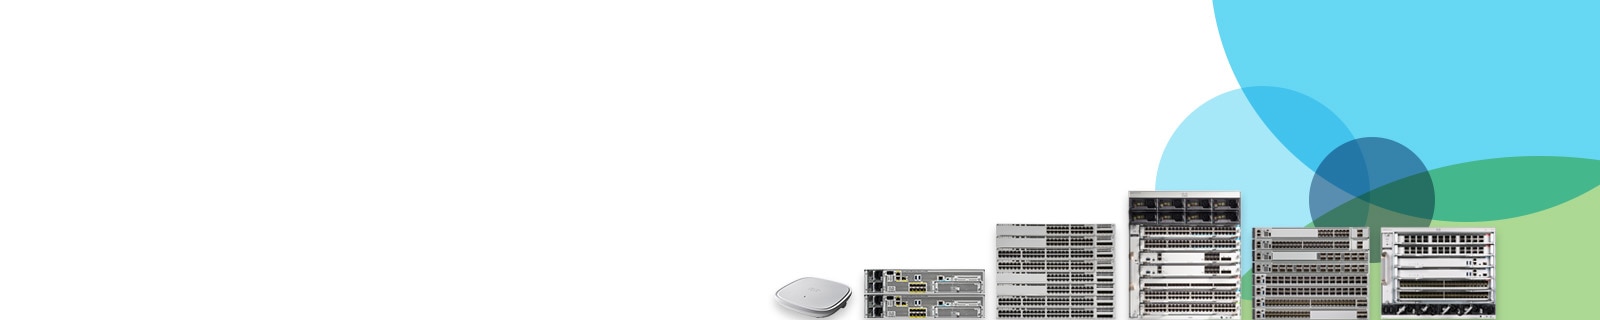 Famiglia wireless e switch Cisco Catalyst 9000